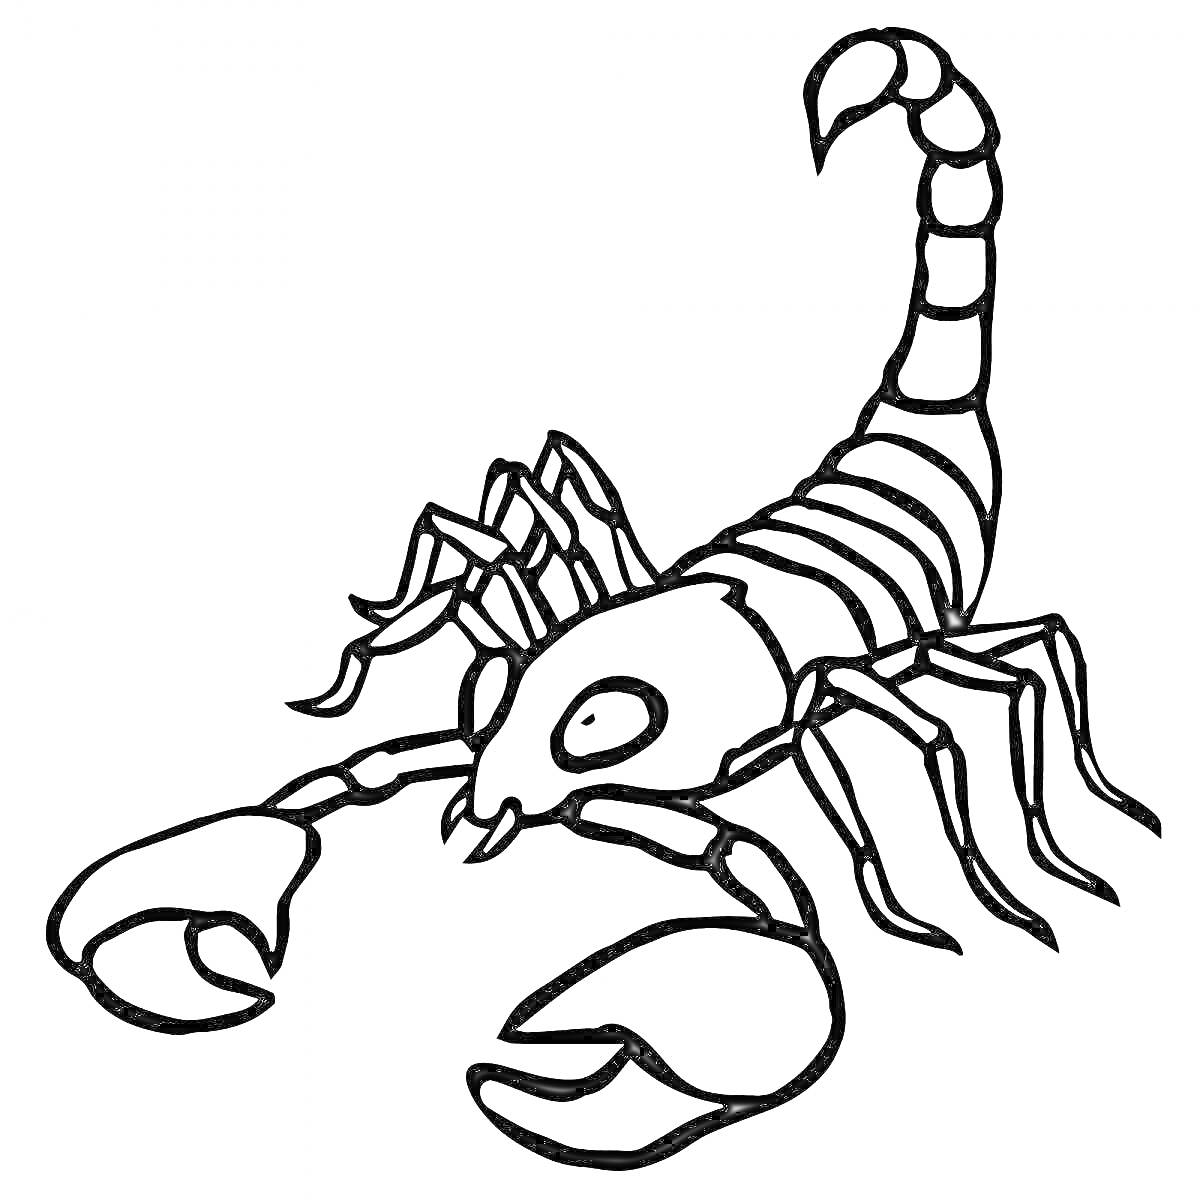 Раскраска Скорпион с клешнями и поднятым хвостом